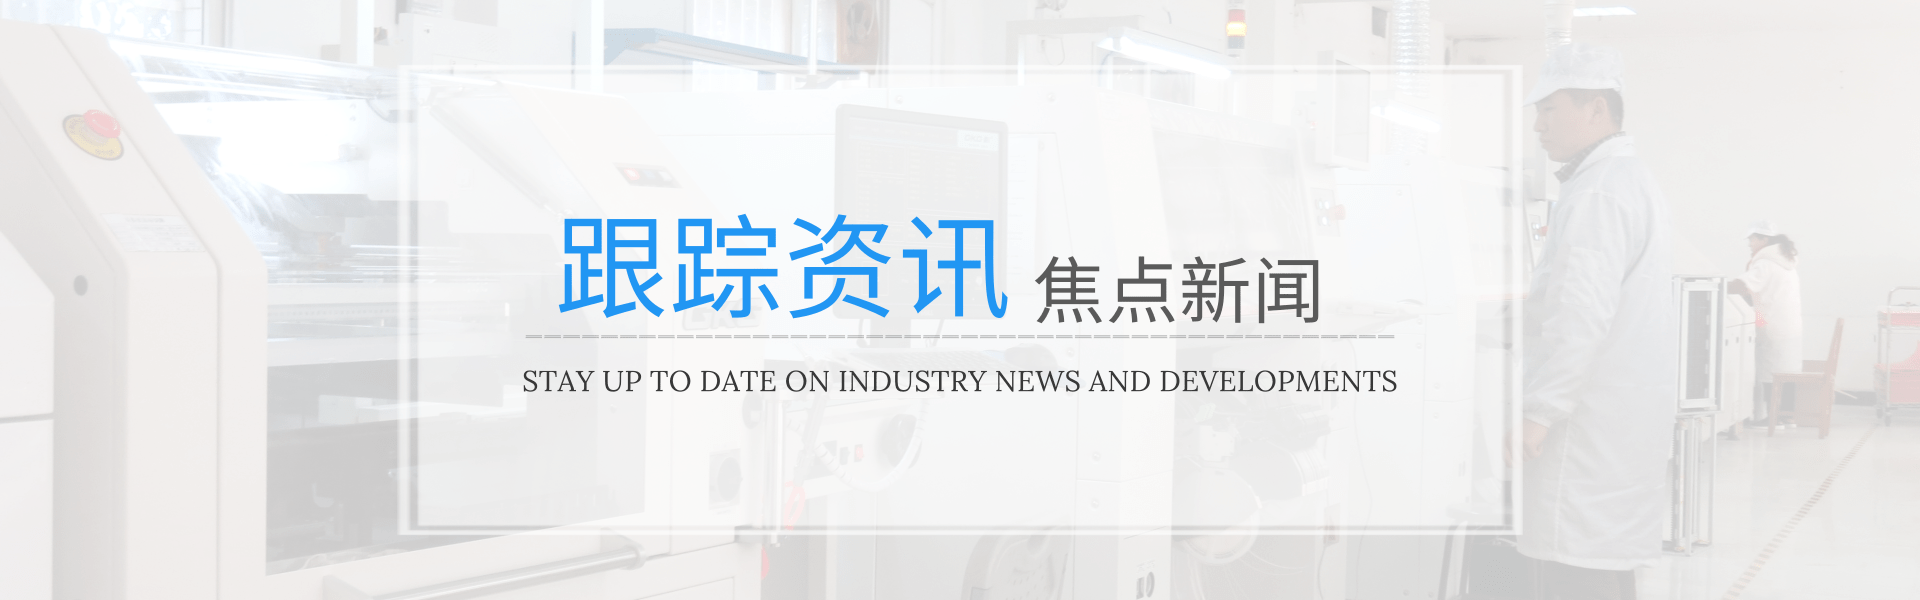 推荐--点胶机对现代工业的发展有何意义-深圳市润之鑫科技有限公司